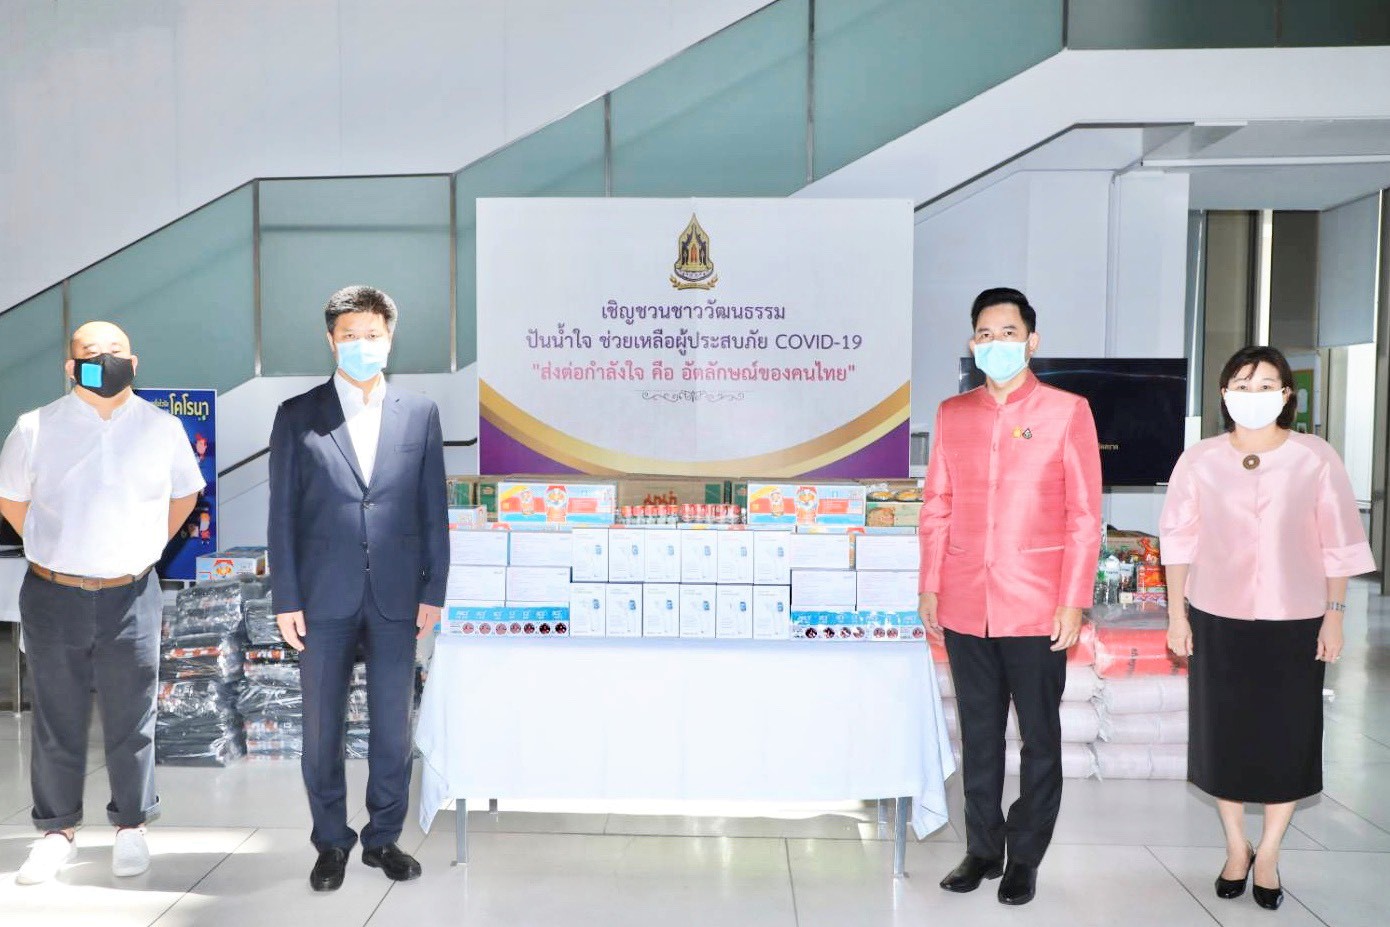 ภาพข่าว: นายอิทธิพล รัฐมนตรีว่าการกระทรวงวัฒนธรรม รับมอบหน้ากากอนามัย และเครื่องวัดอุณหภูมิ จากผู้แทนสภาวัฒนธรรมไทย-จีน ส่งเสริมความสัมพันธ์